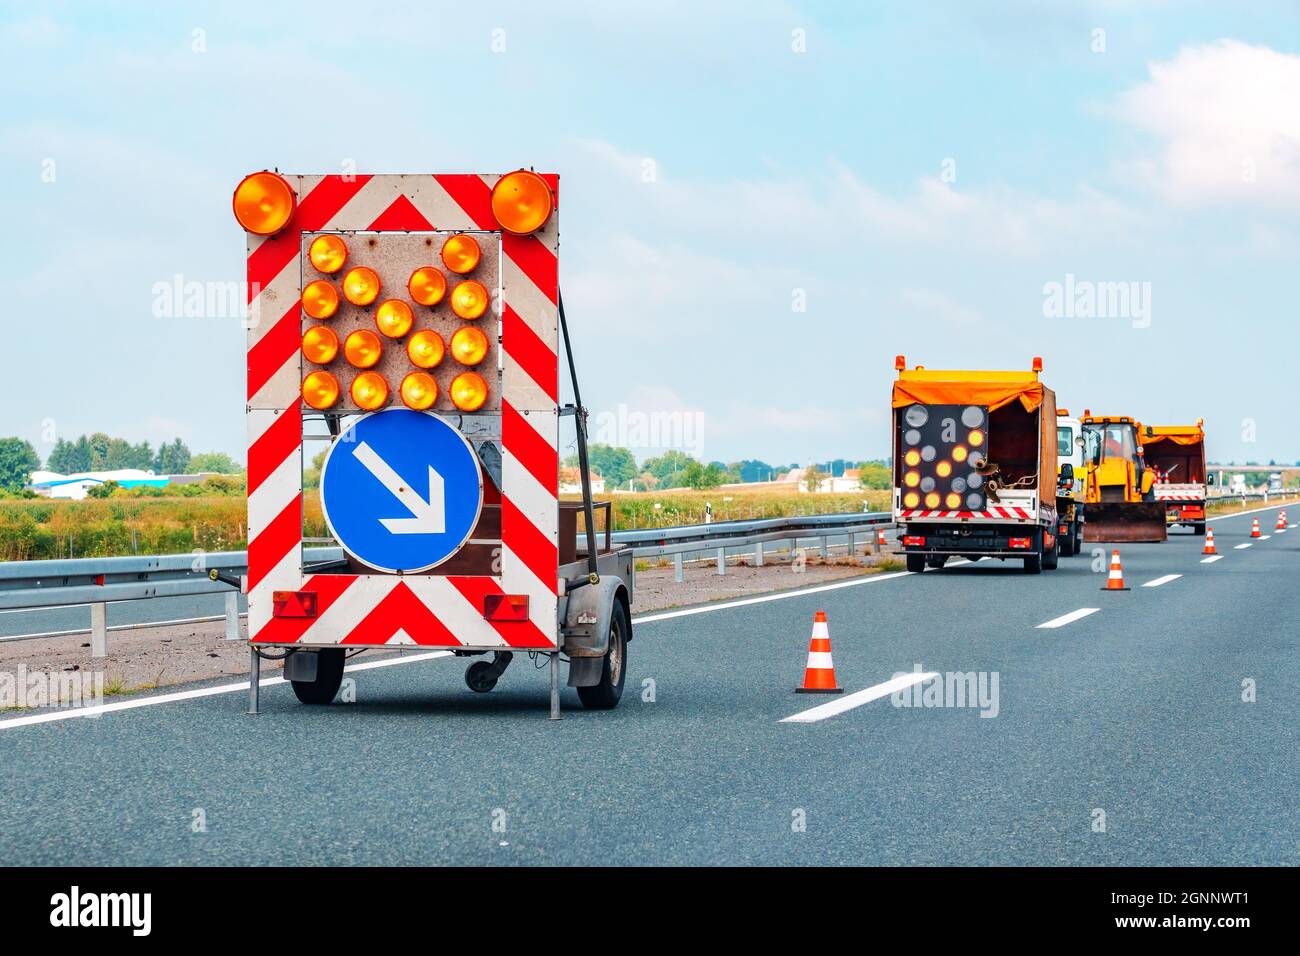 Chariot d'entretien des routes et signalisation pour travaux routiers, ouvriers réparant les routes Banque D'Images